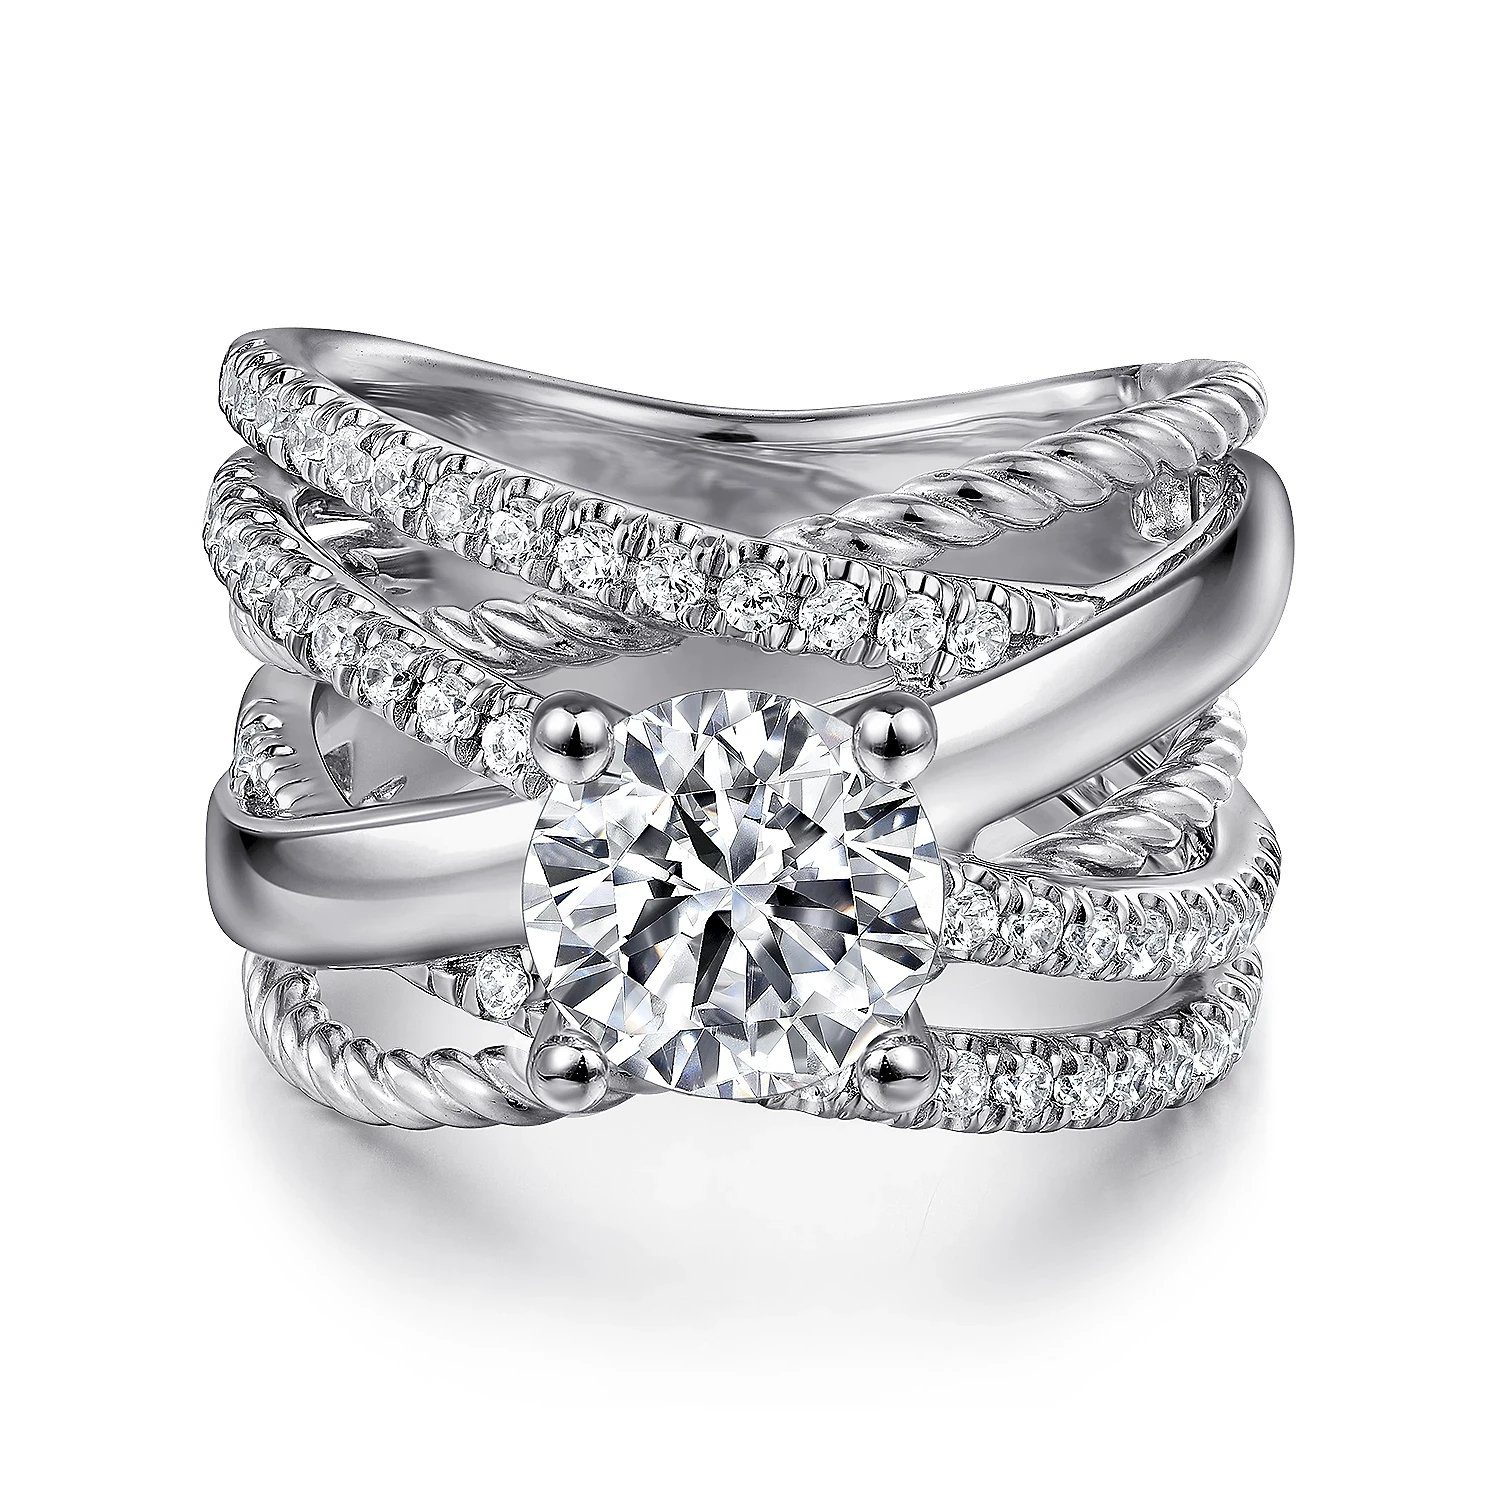 Woman Wearing a Diamond Ring · Free Stock Photo